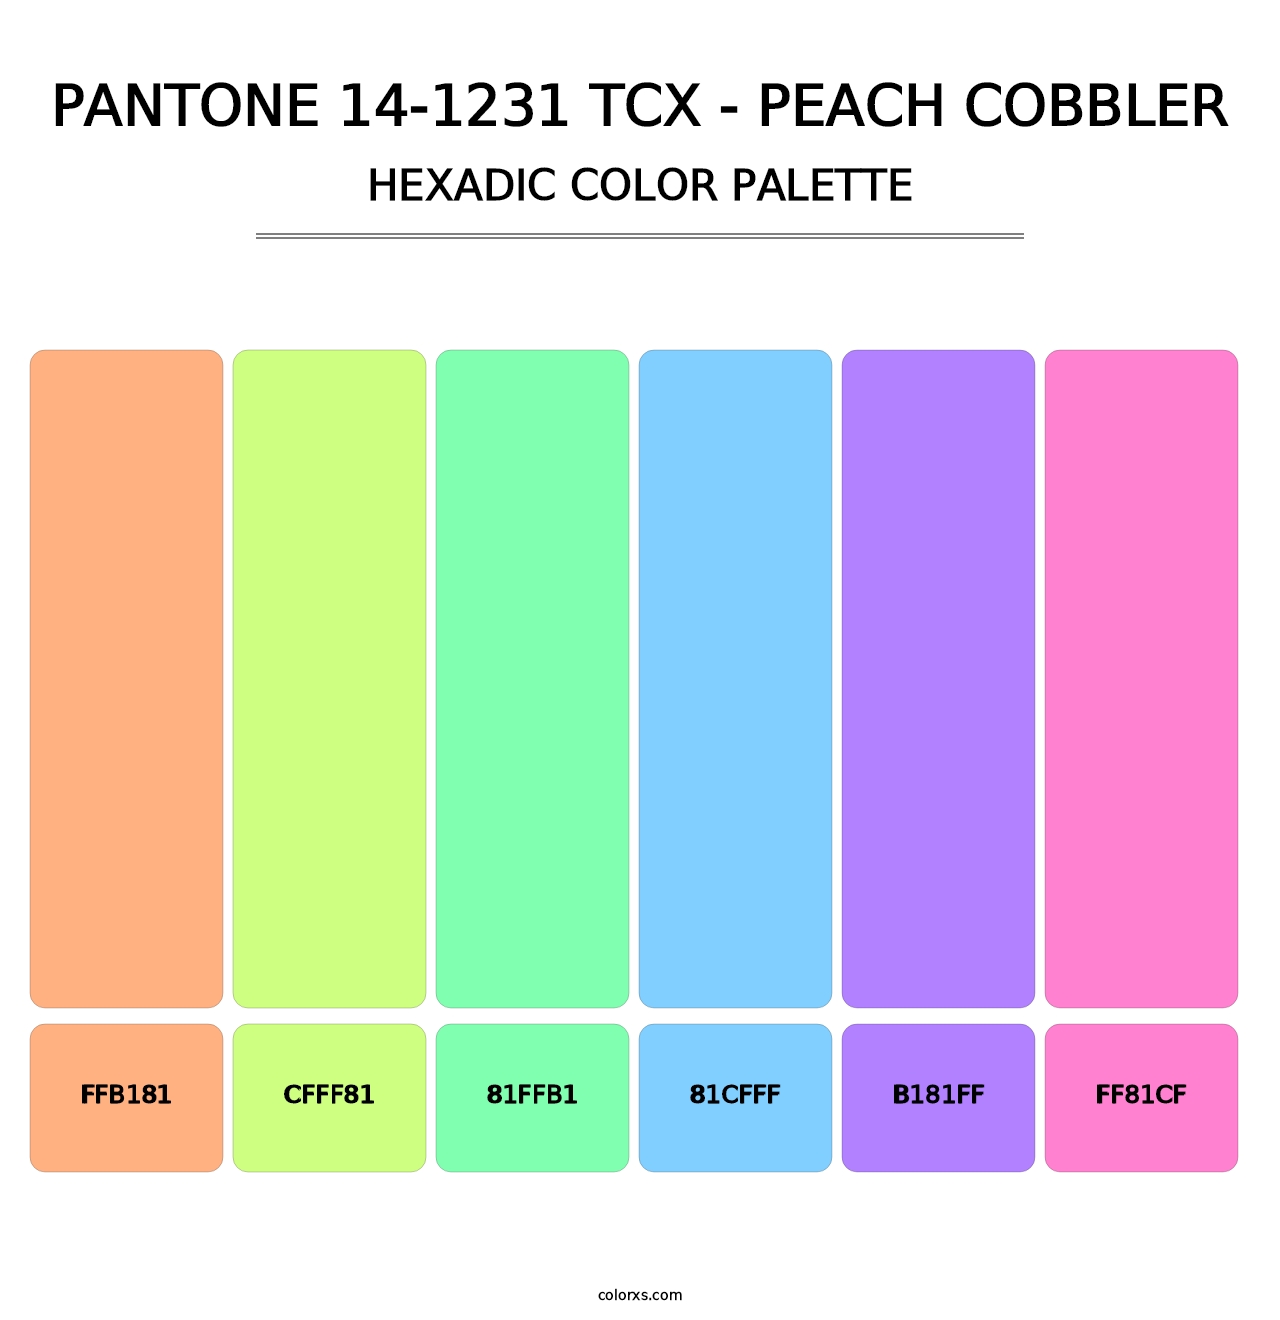 PANTONE 14-1231 TCX - Peach Cobbler - Hexadic Color Palette